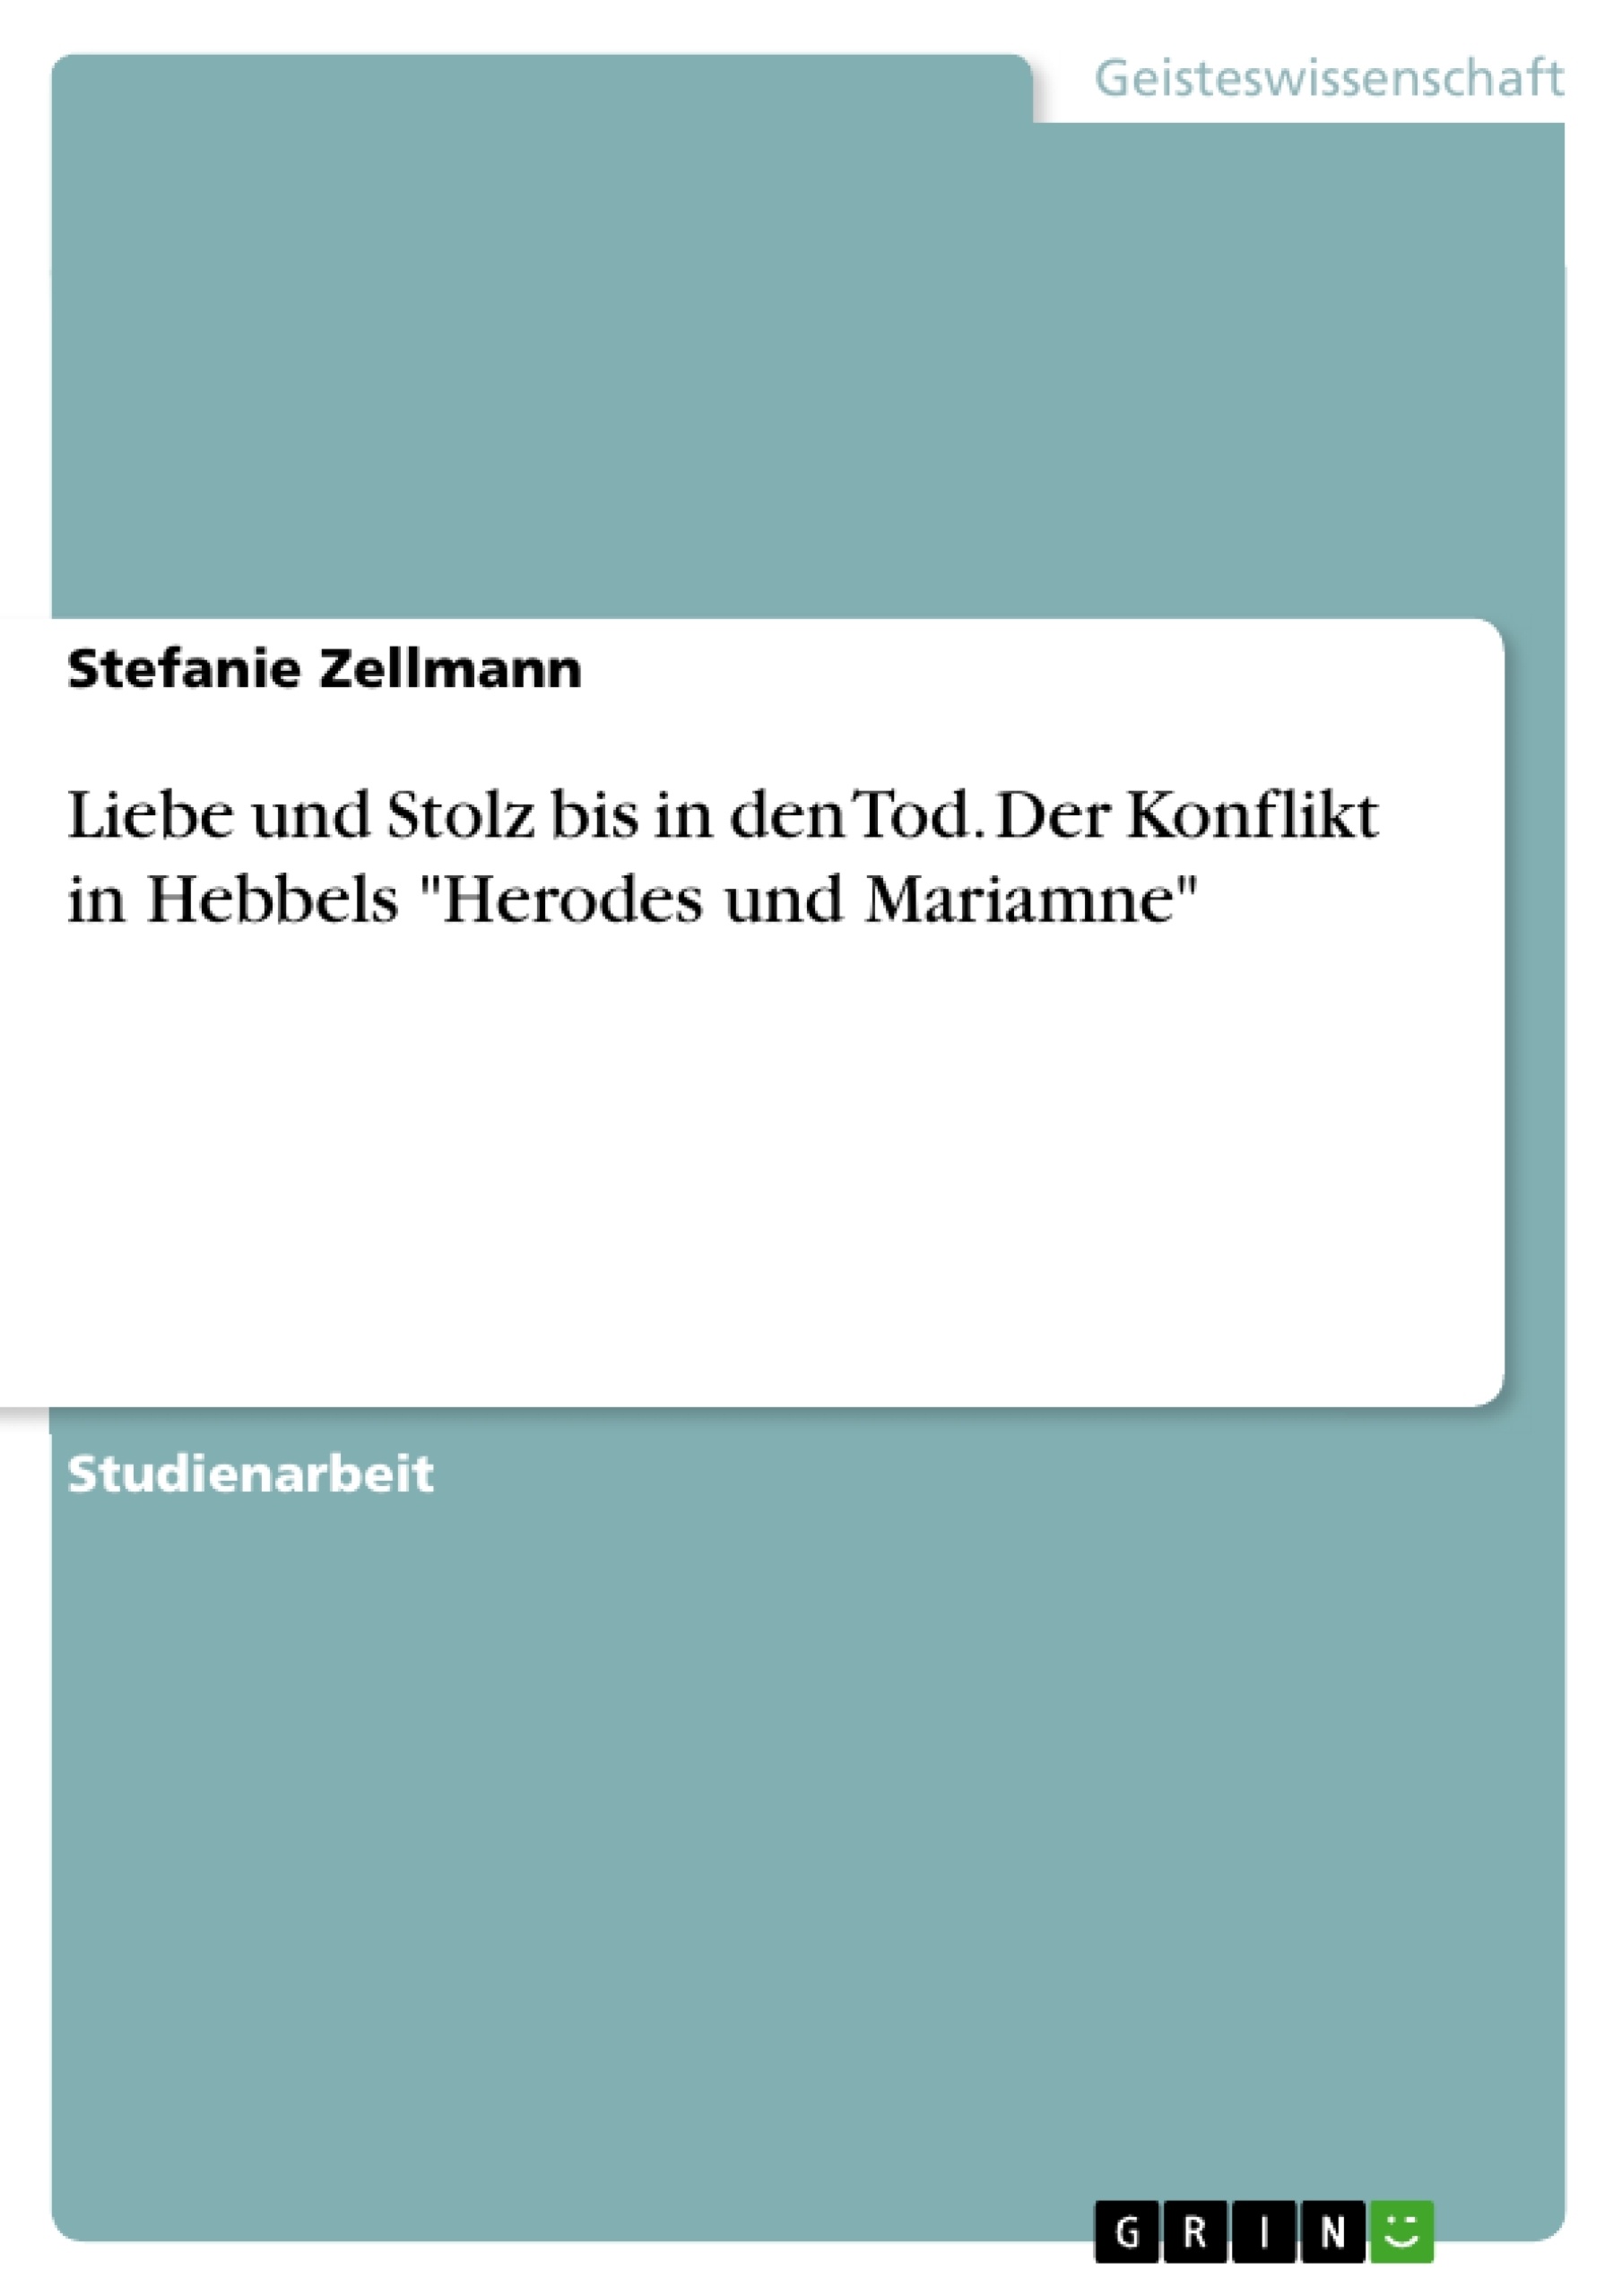 Title: Liebe und Stolz bis in den Tod. Der Konflikt in Hebbels "Herodes und Mariamne"